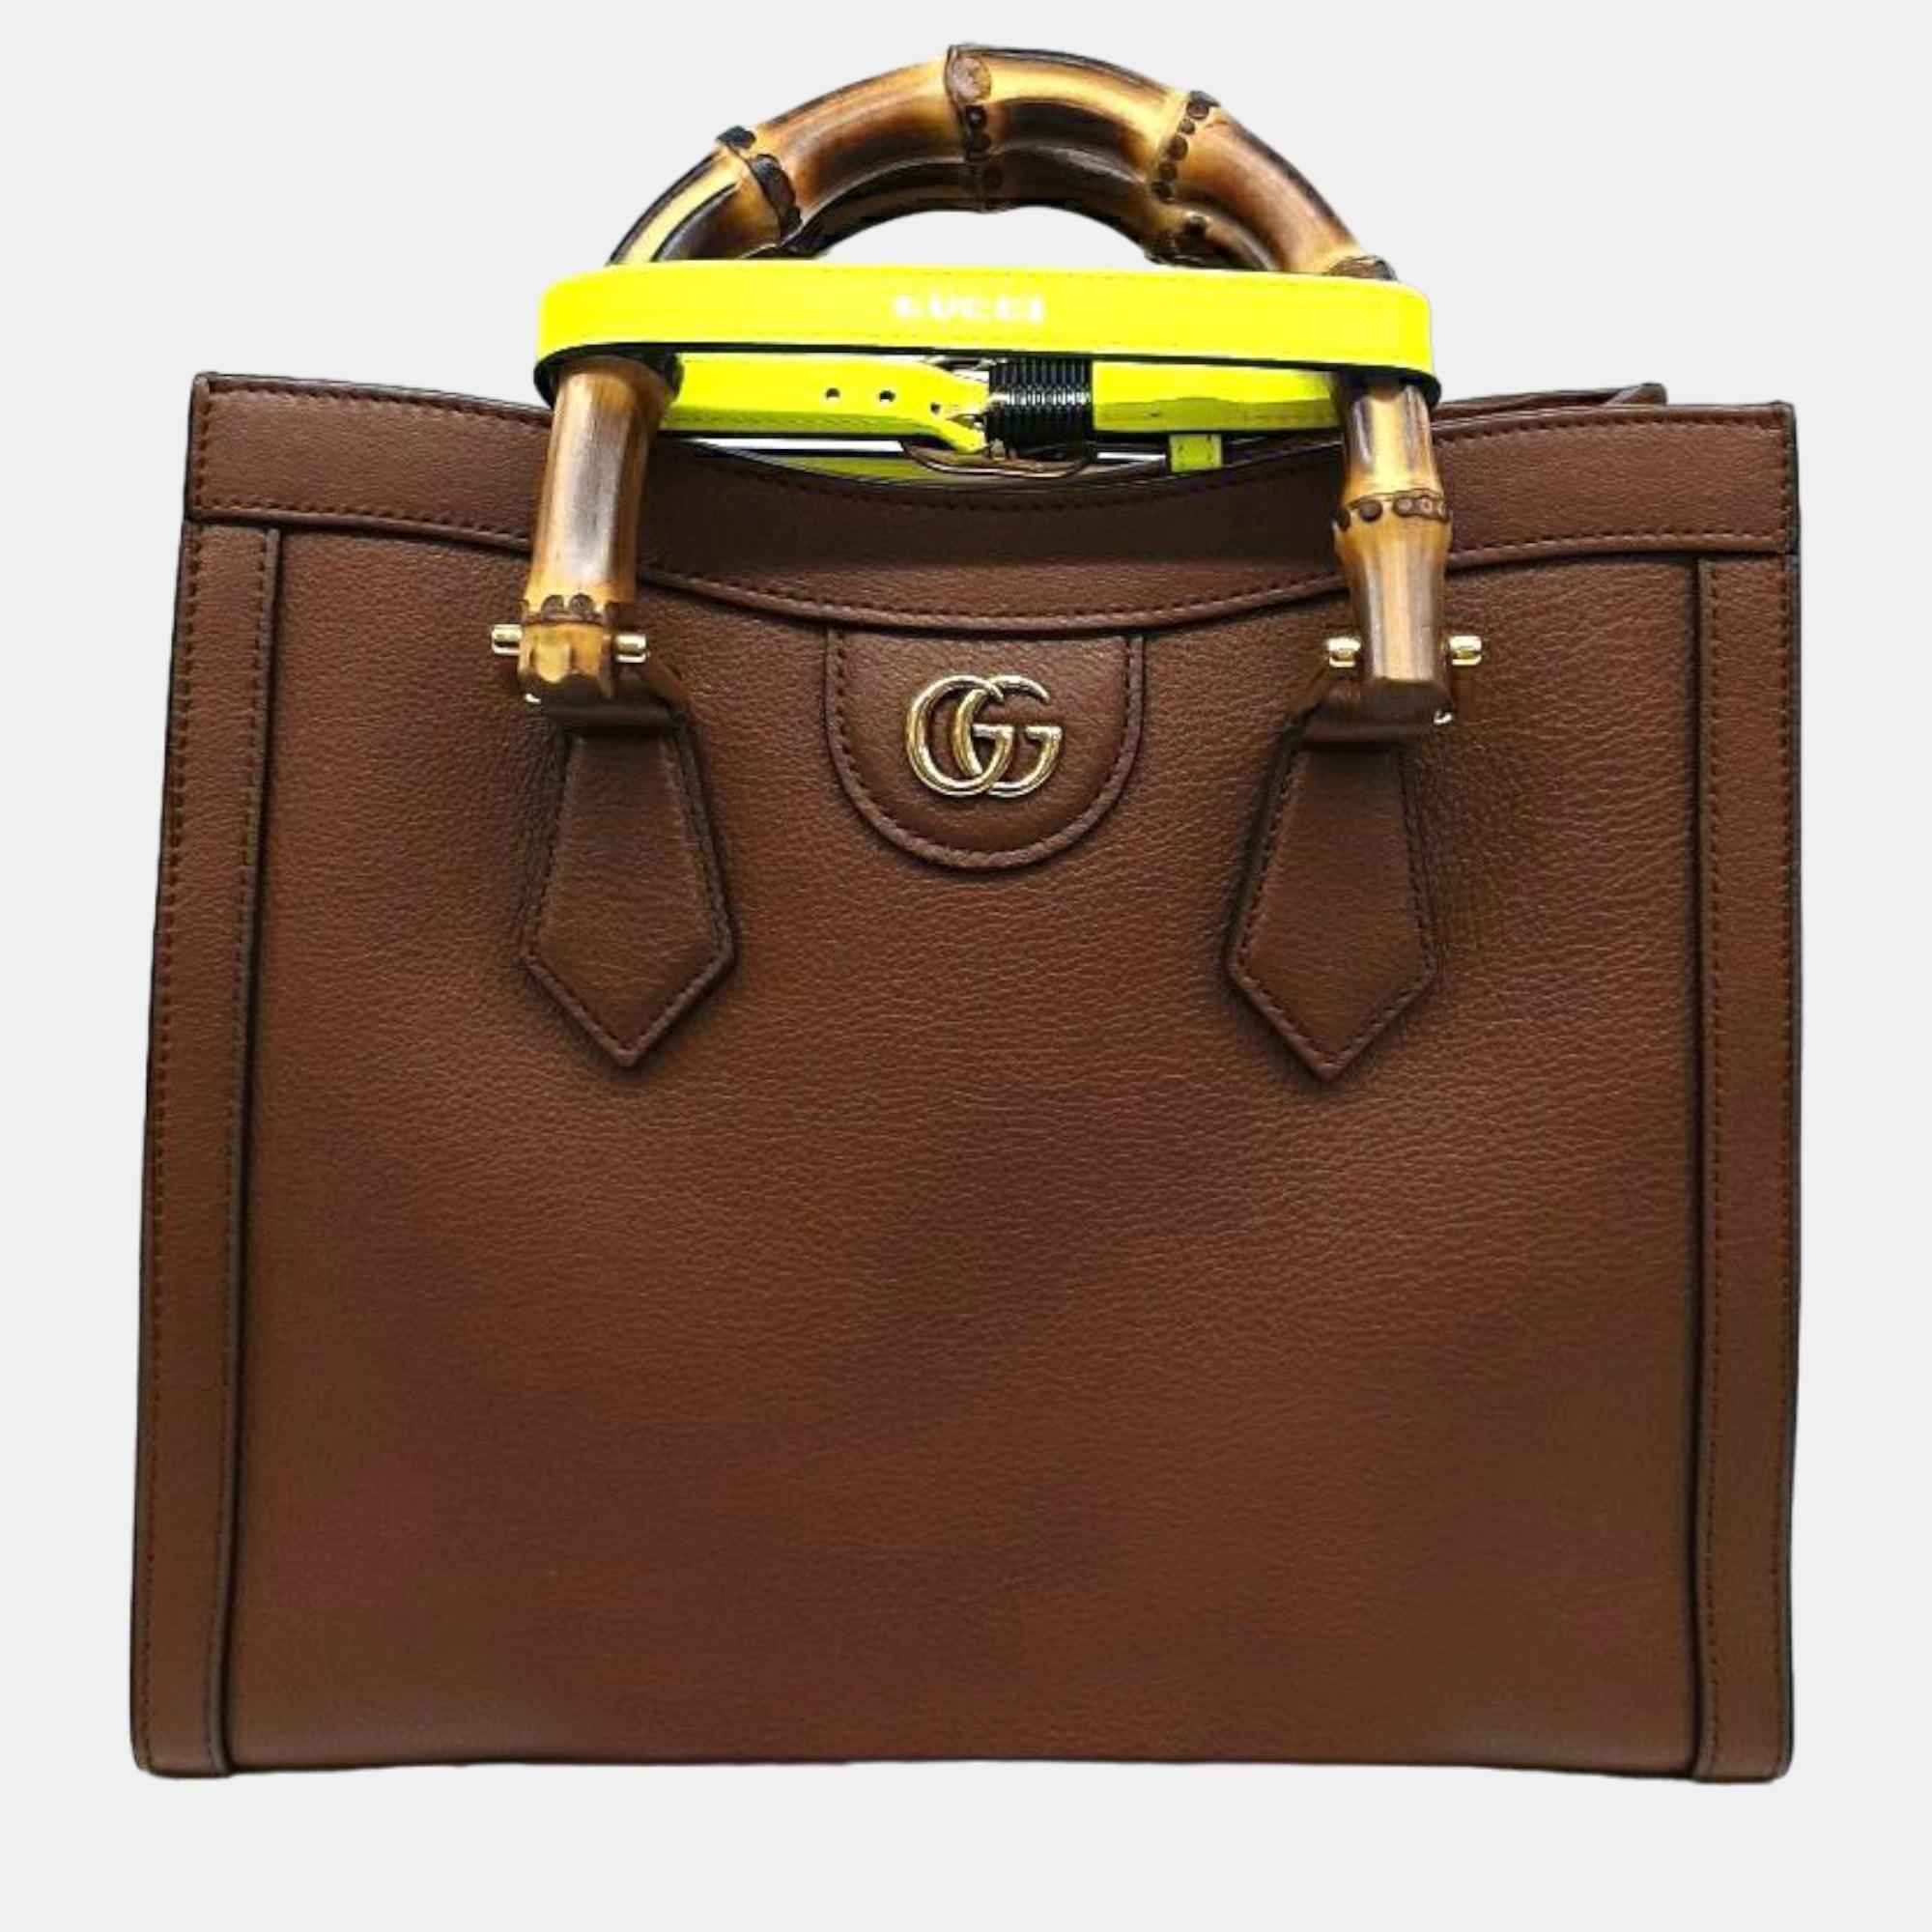 Gucci Diana Bamboo Tote Bag Small (660195)